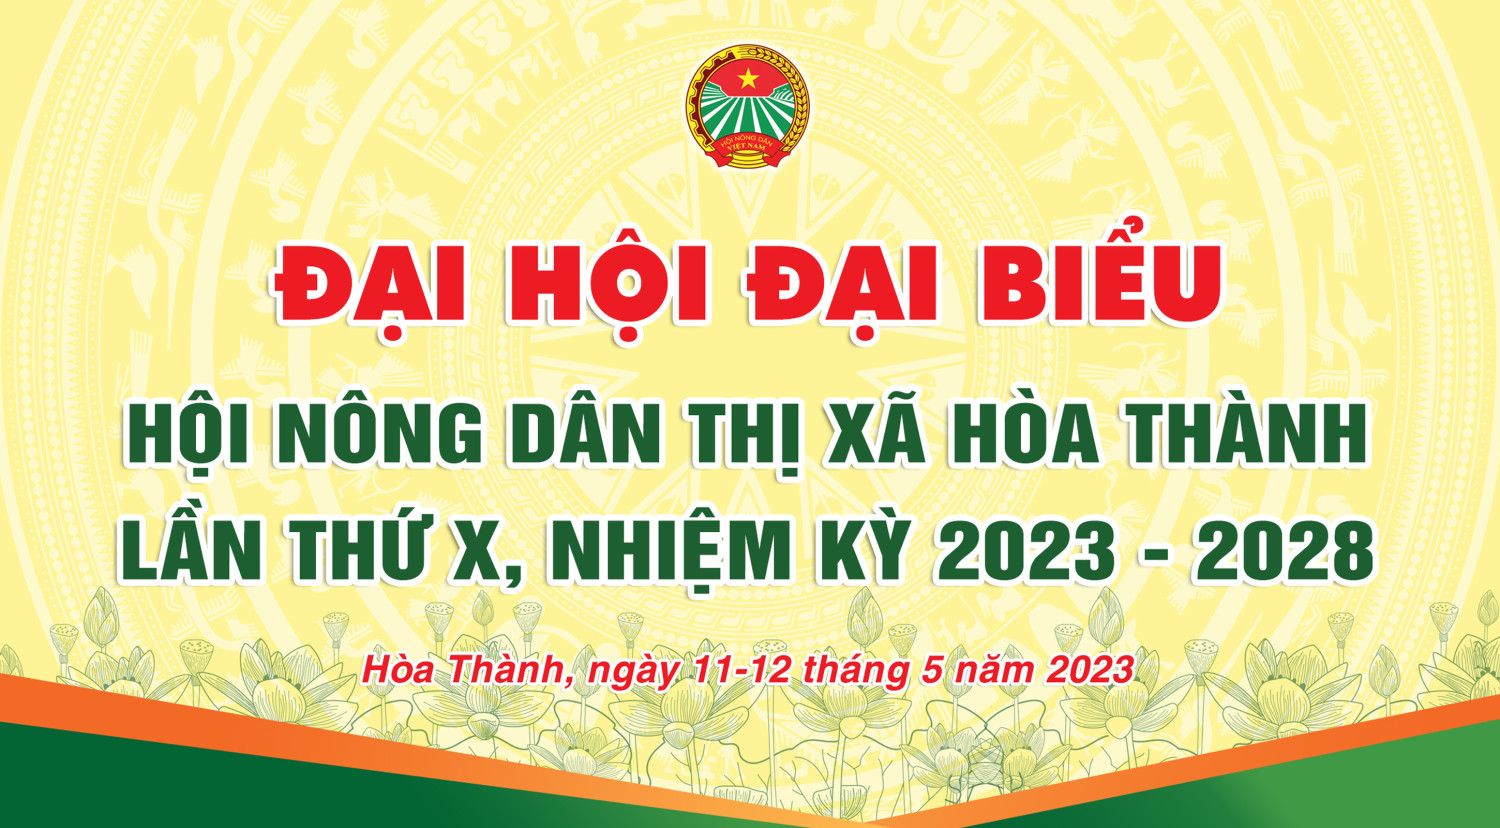 Ông Nguyễn Hoàng Đức tái đắc cử Chủ tịch Hội Nông dân thị xã Hoà Thành, nhiệm kỳ 2023 – 2028